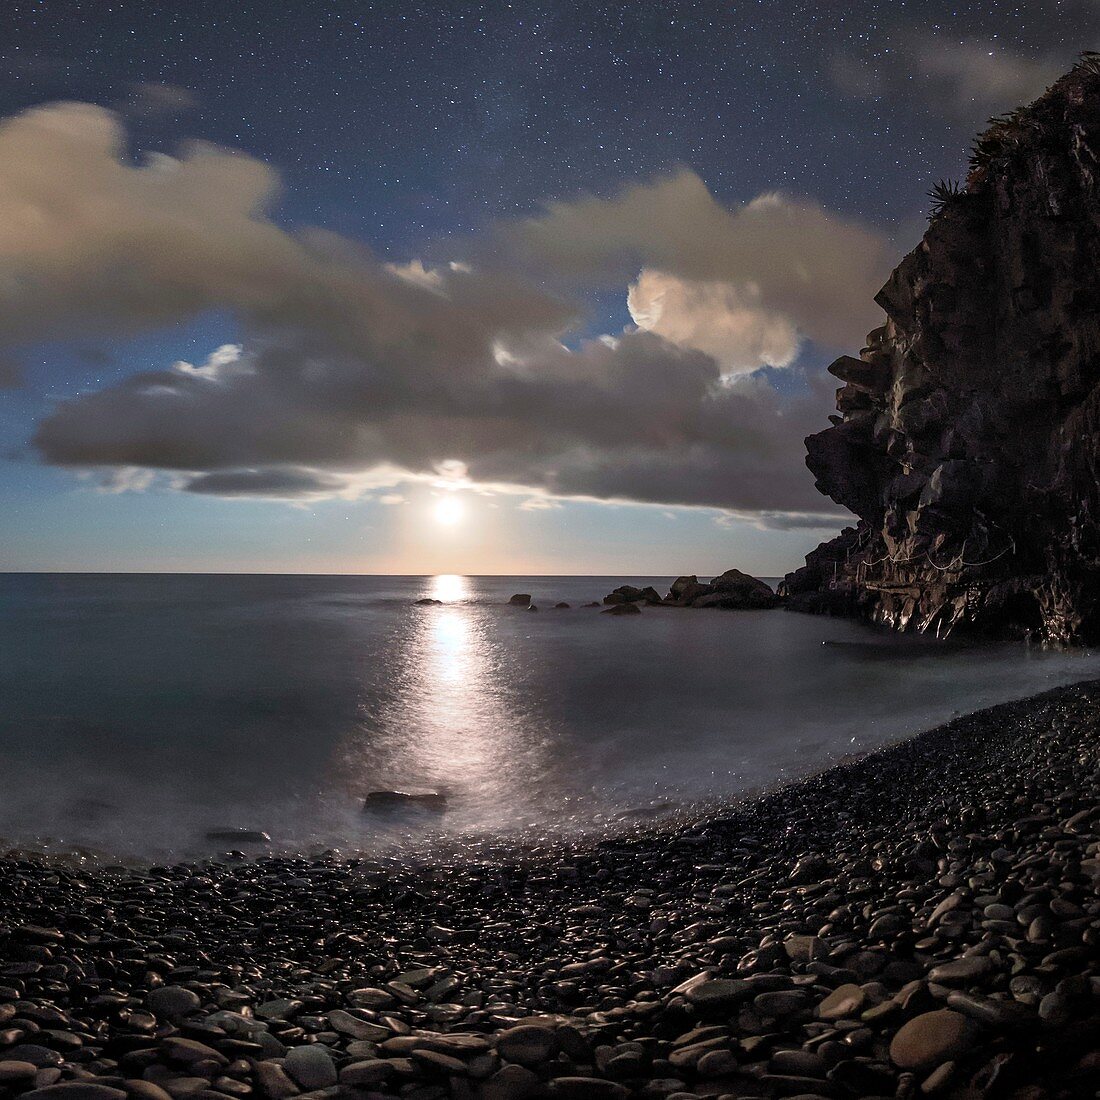 Moonlight on Mediterranean Sea, Italy